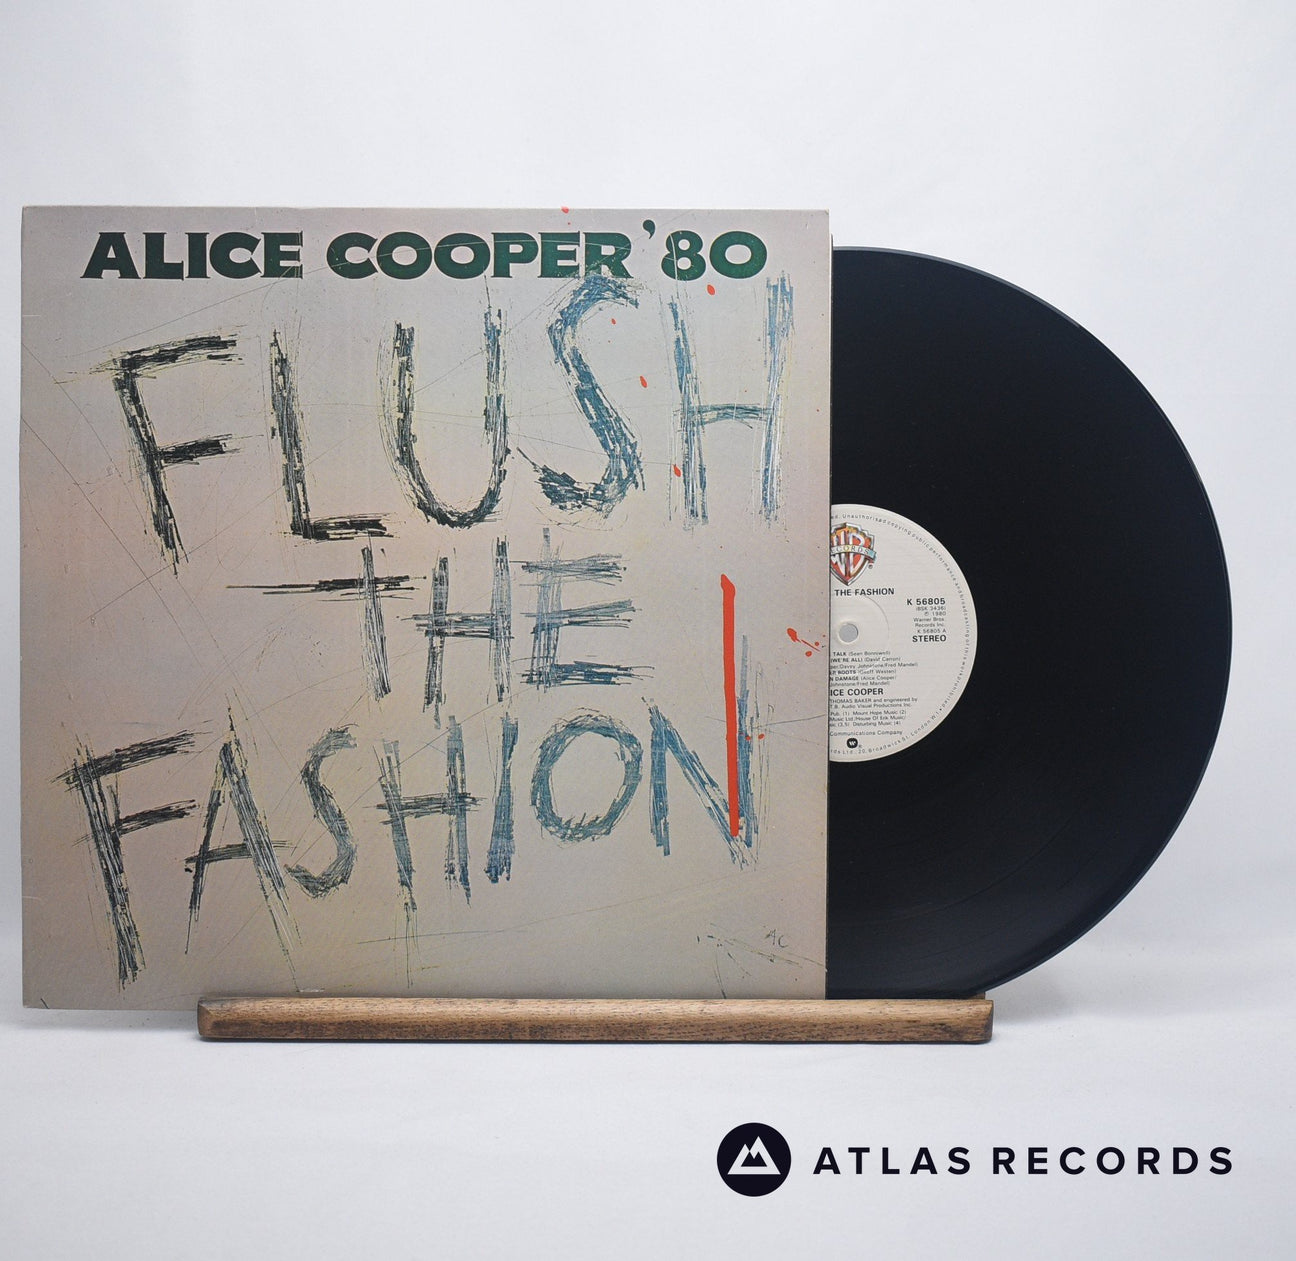 Alice Cooper Flush The Fashion LP Vinyl Record - Front Cover & Record